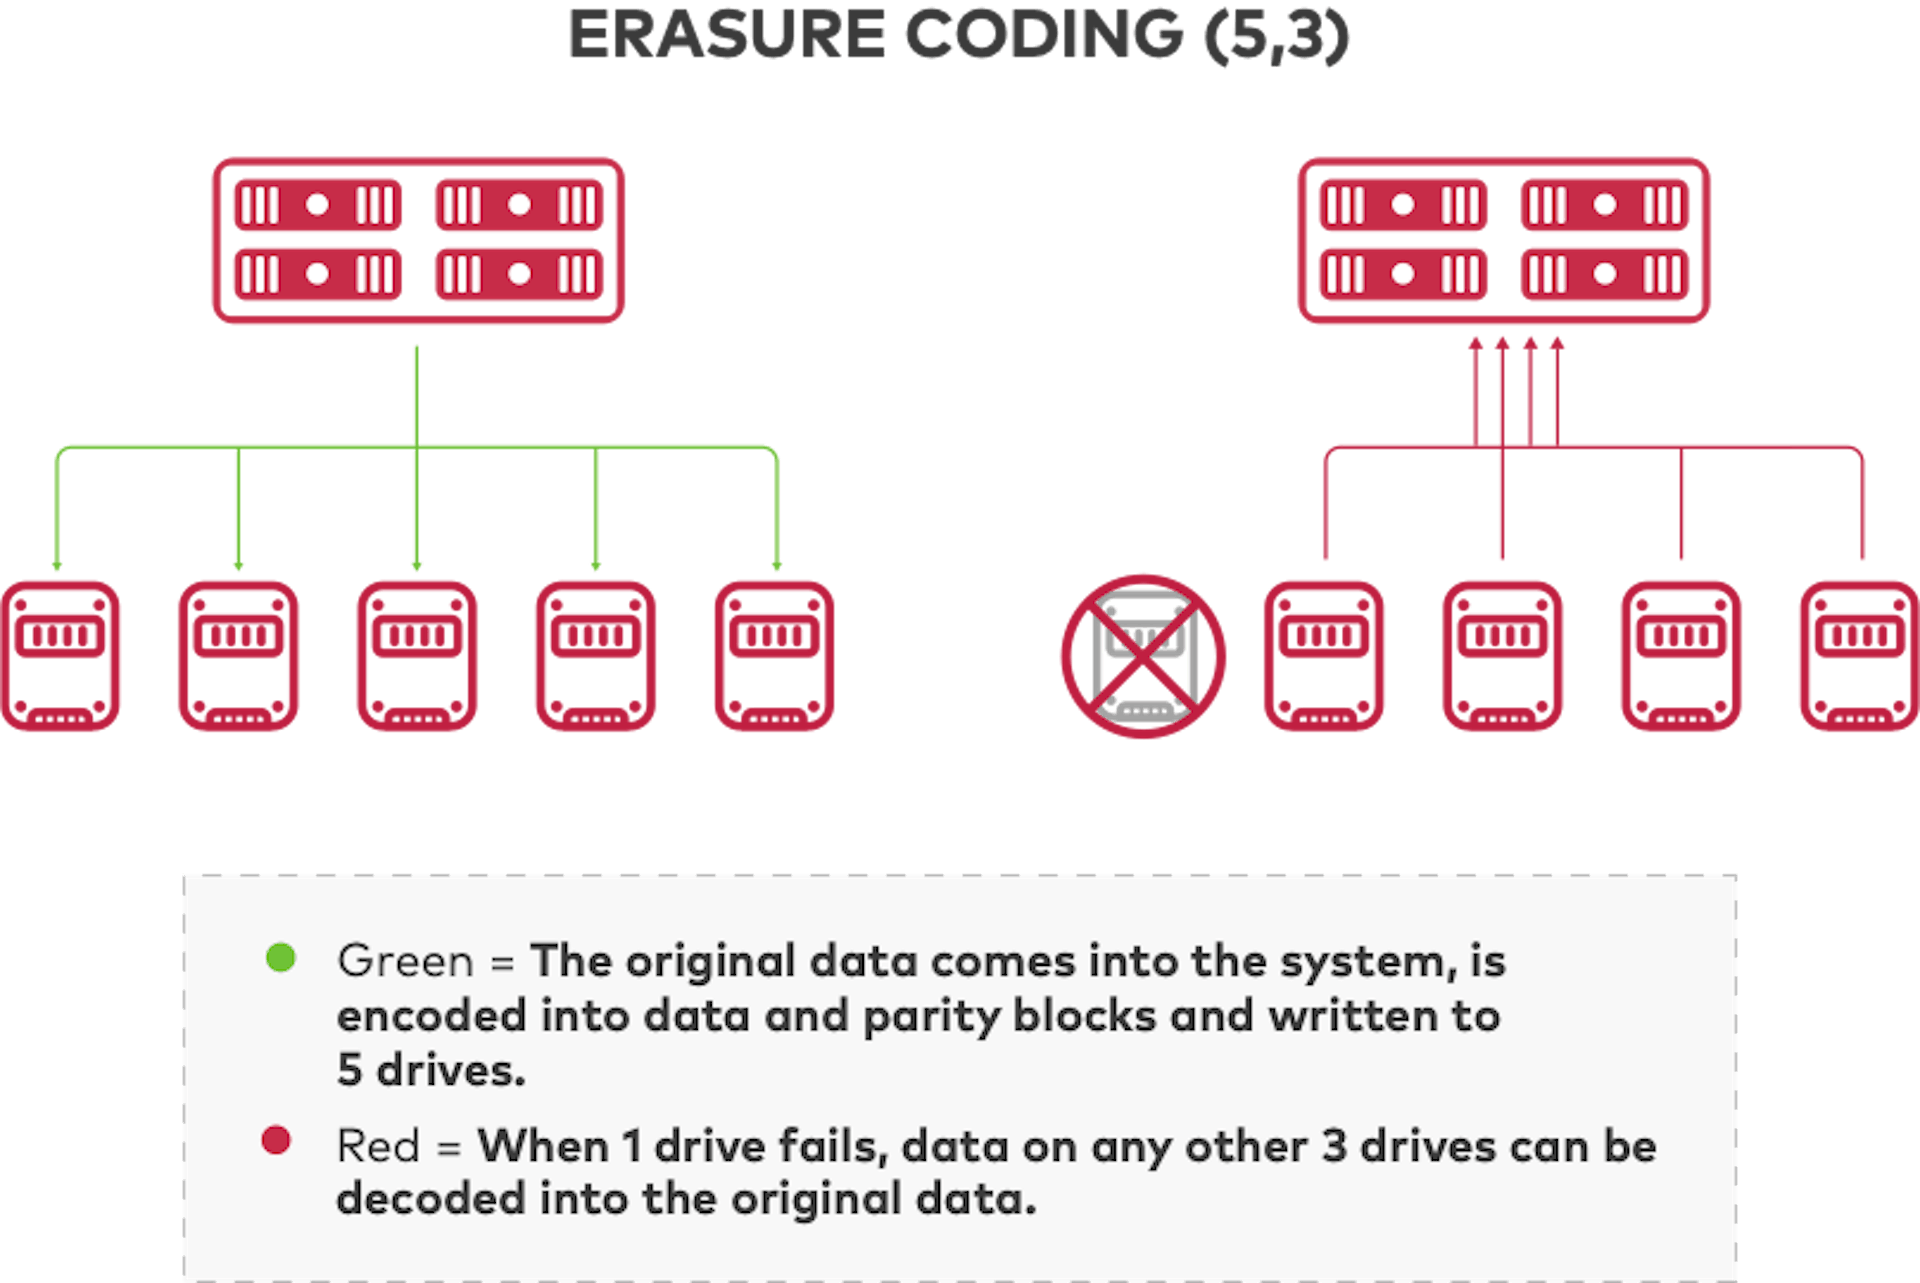 A codificação de eliminação distribui dados e paridade entre unidades.